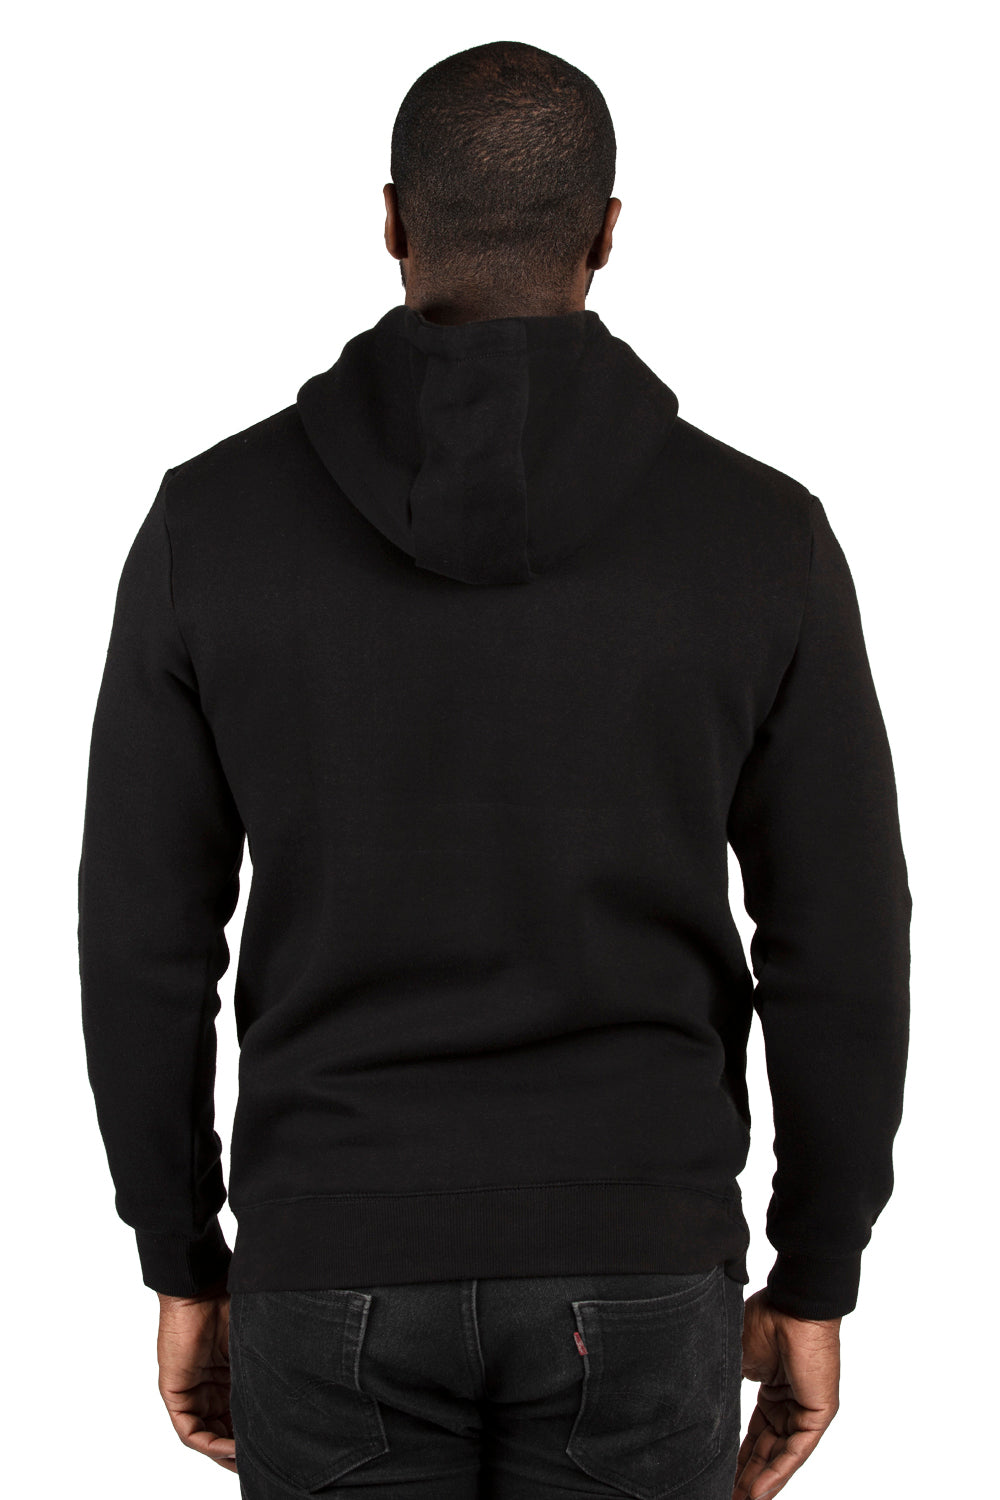 Threadfast Apparel 320H Mens Ultimate Fleece Hooded Sweatshirt Hoodie Black Back